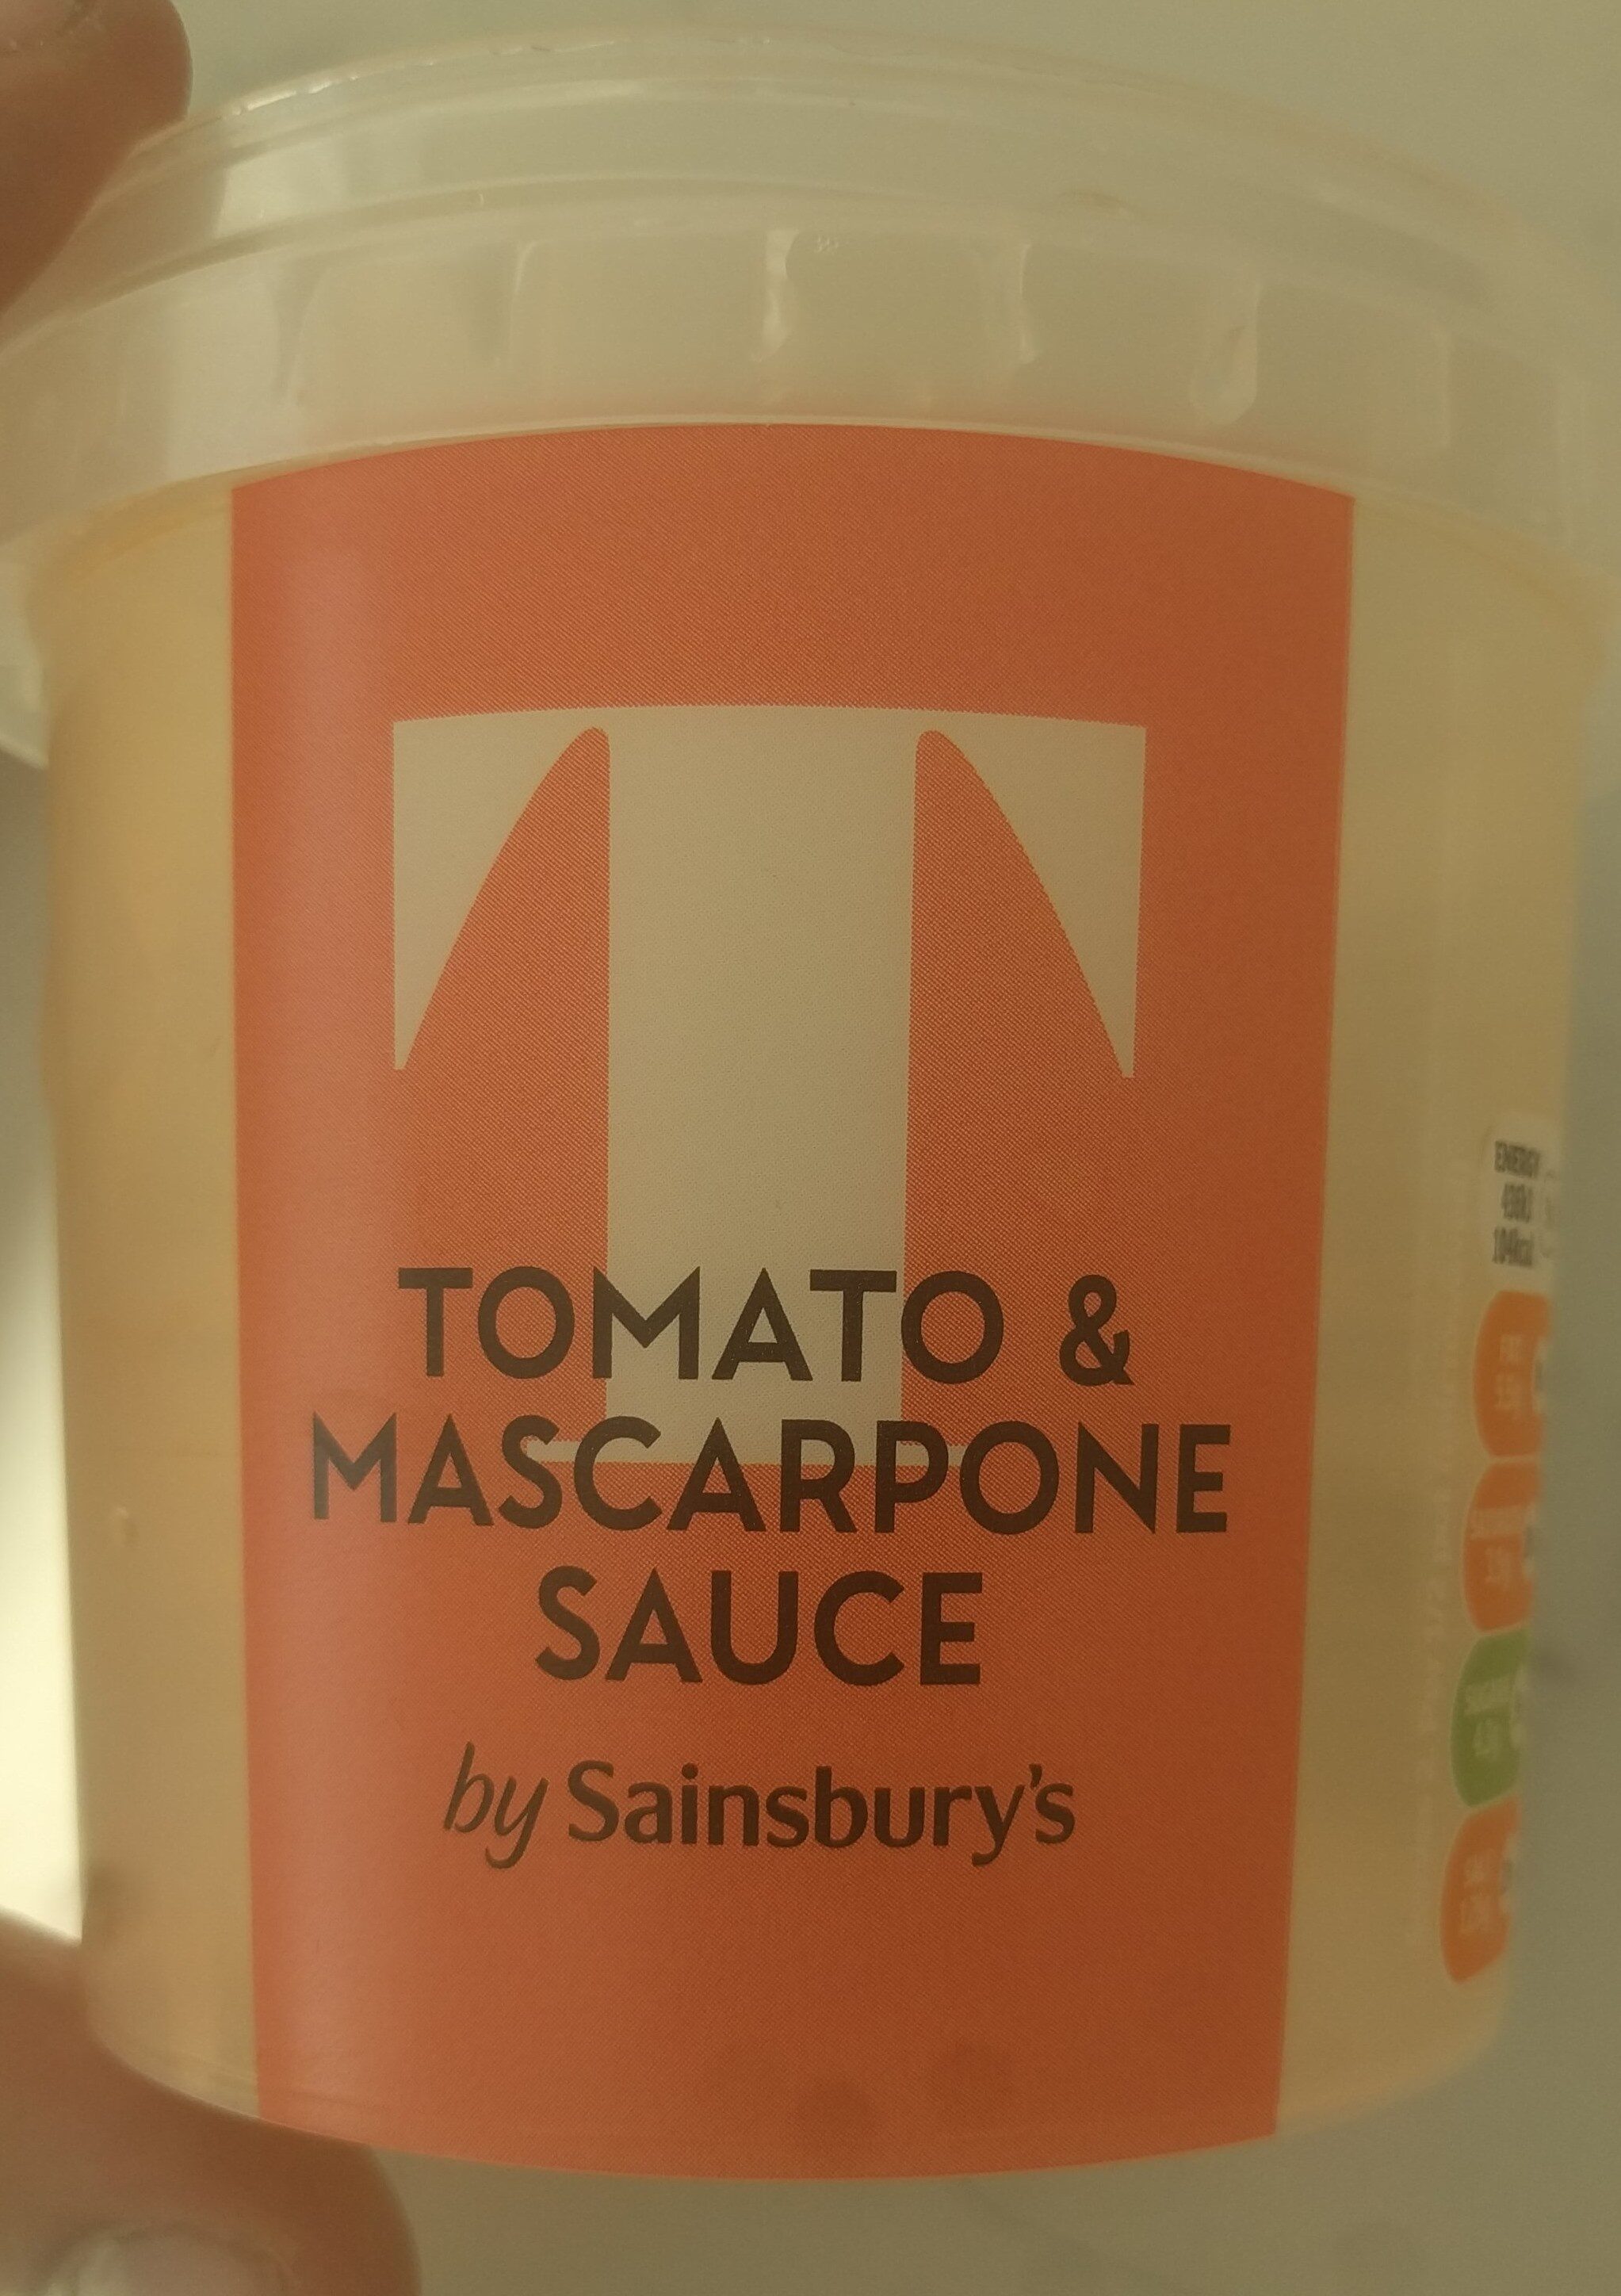 Tomato & Mascarpone sause - Product